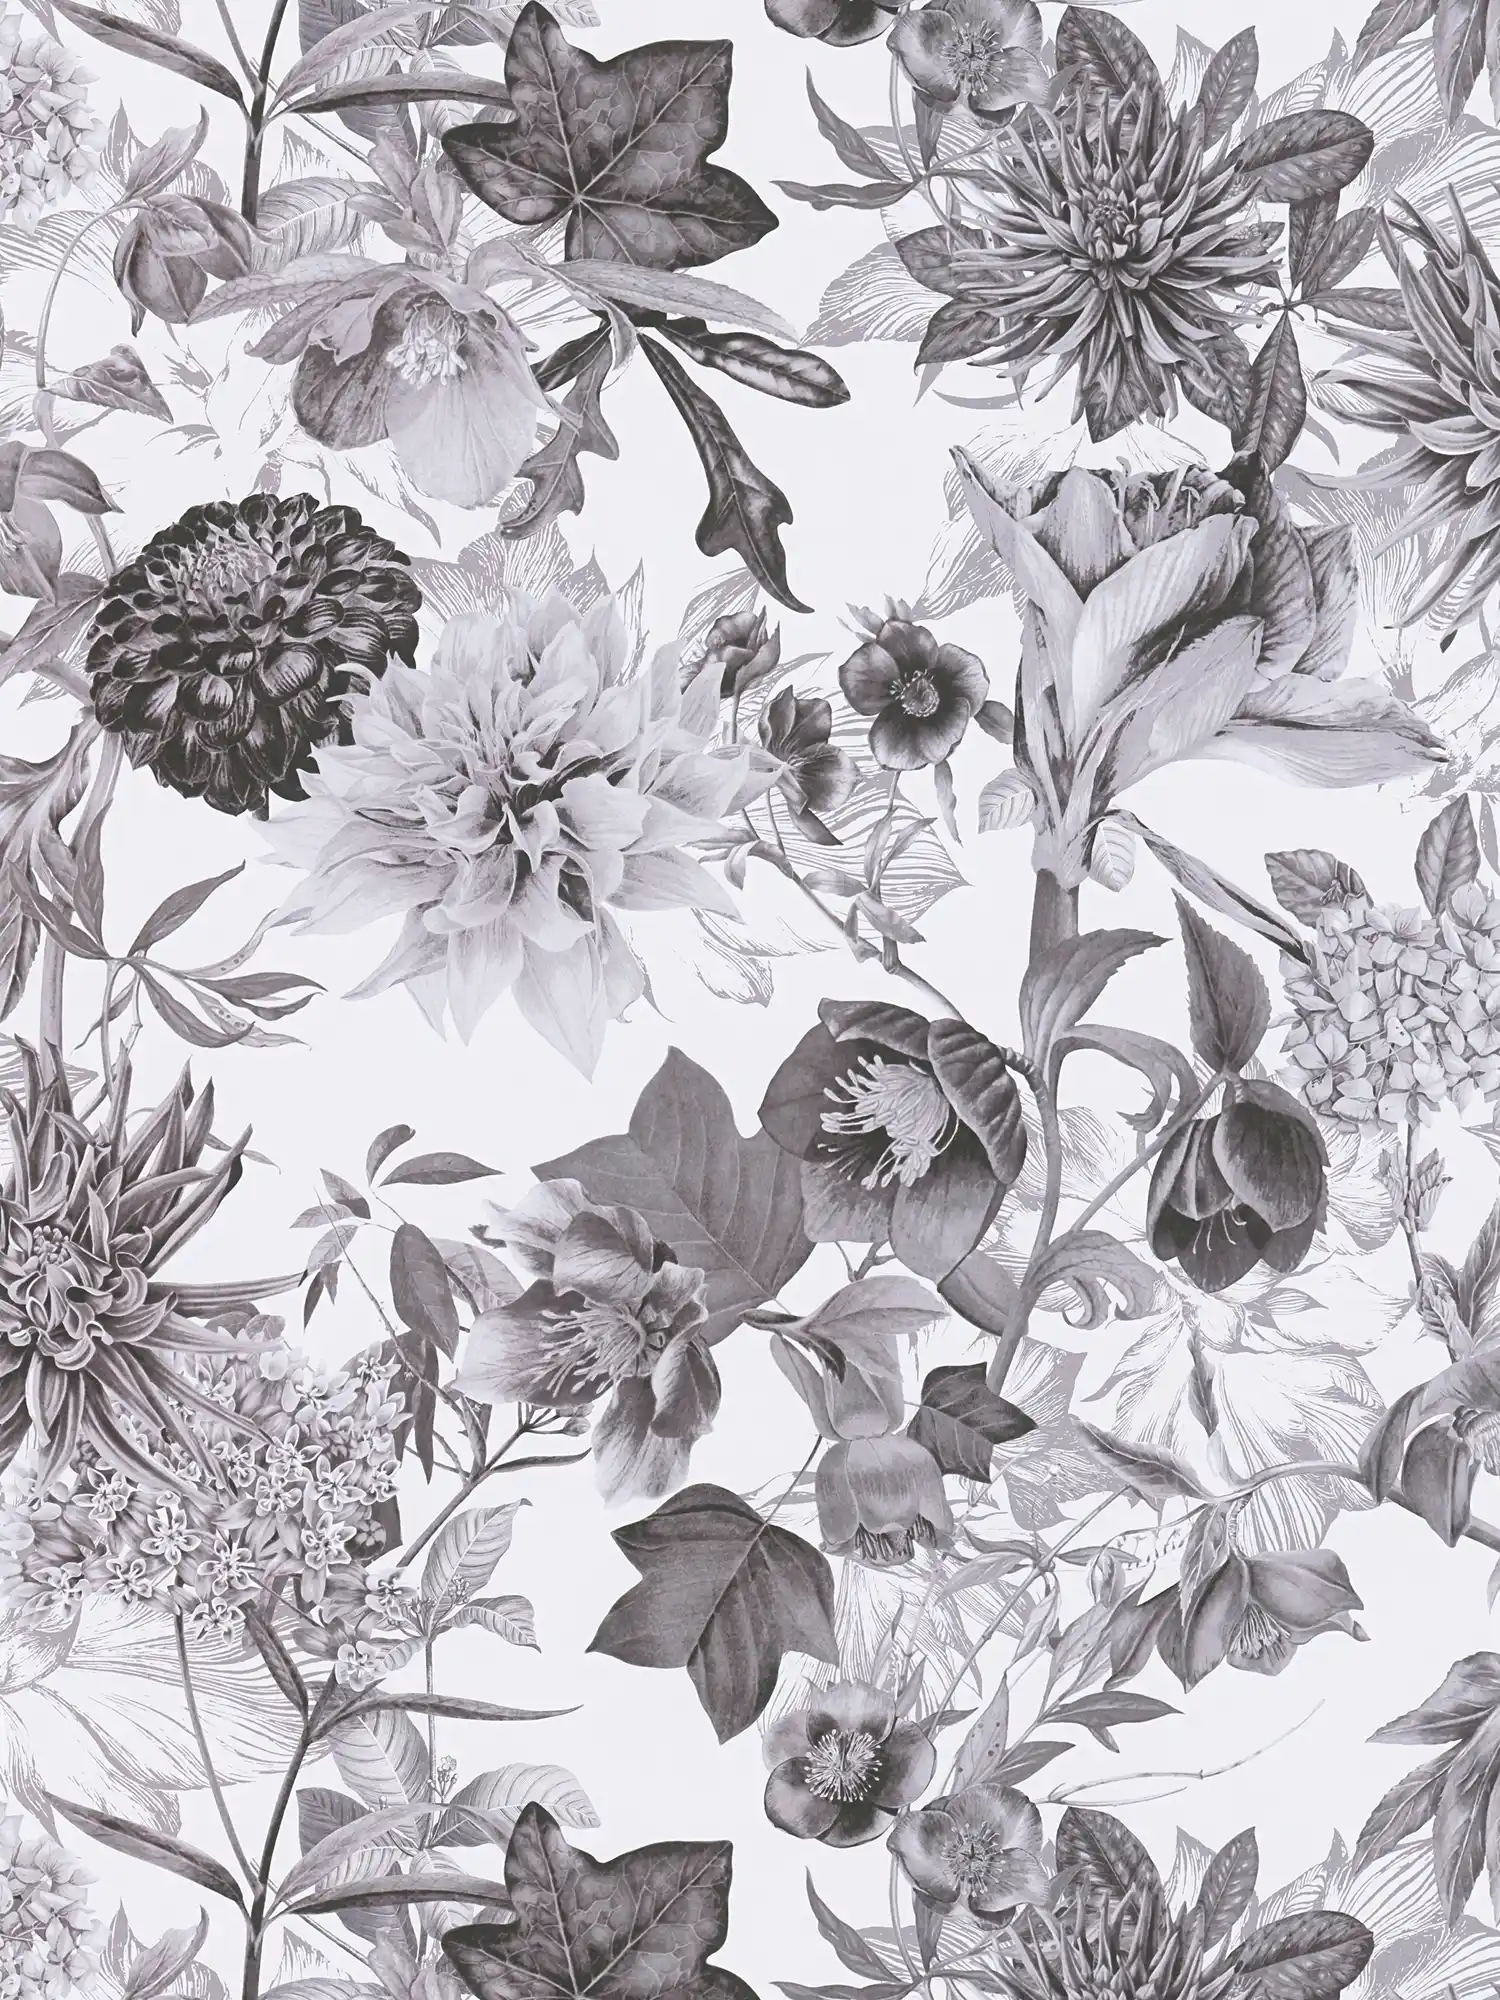         Zwart-wit behang met bloemenpatroon
    